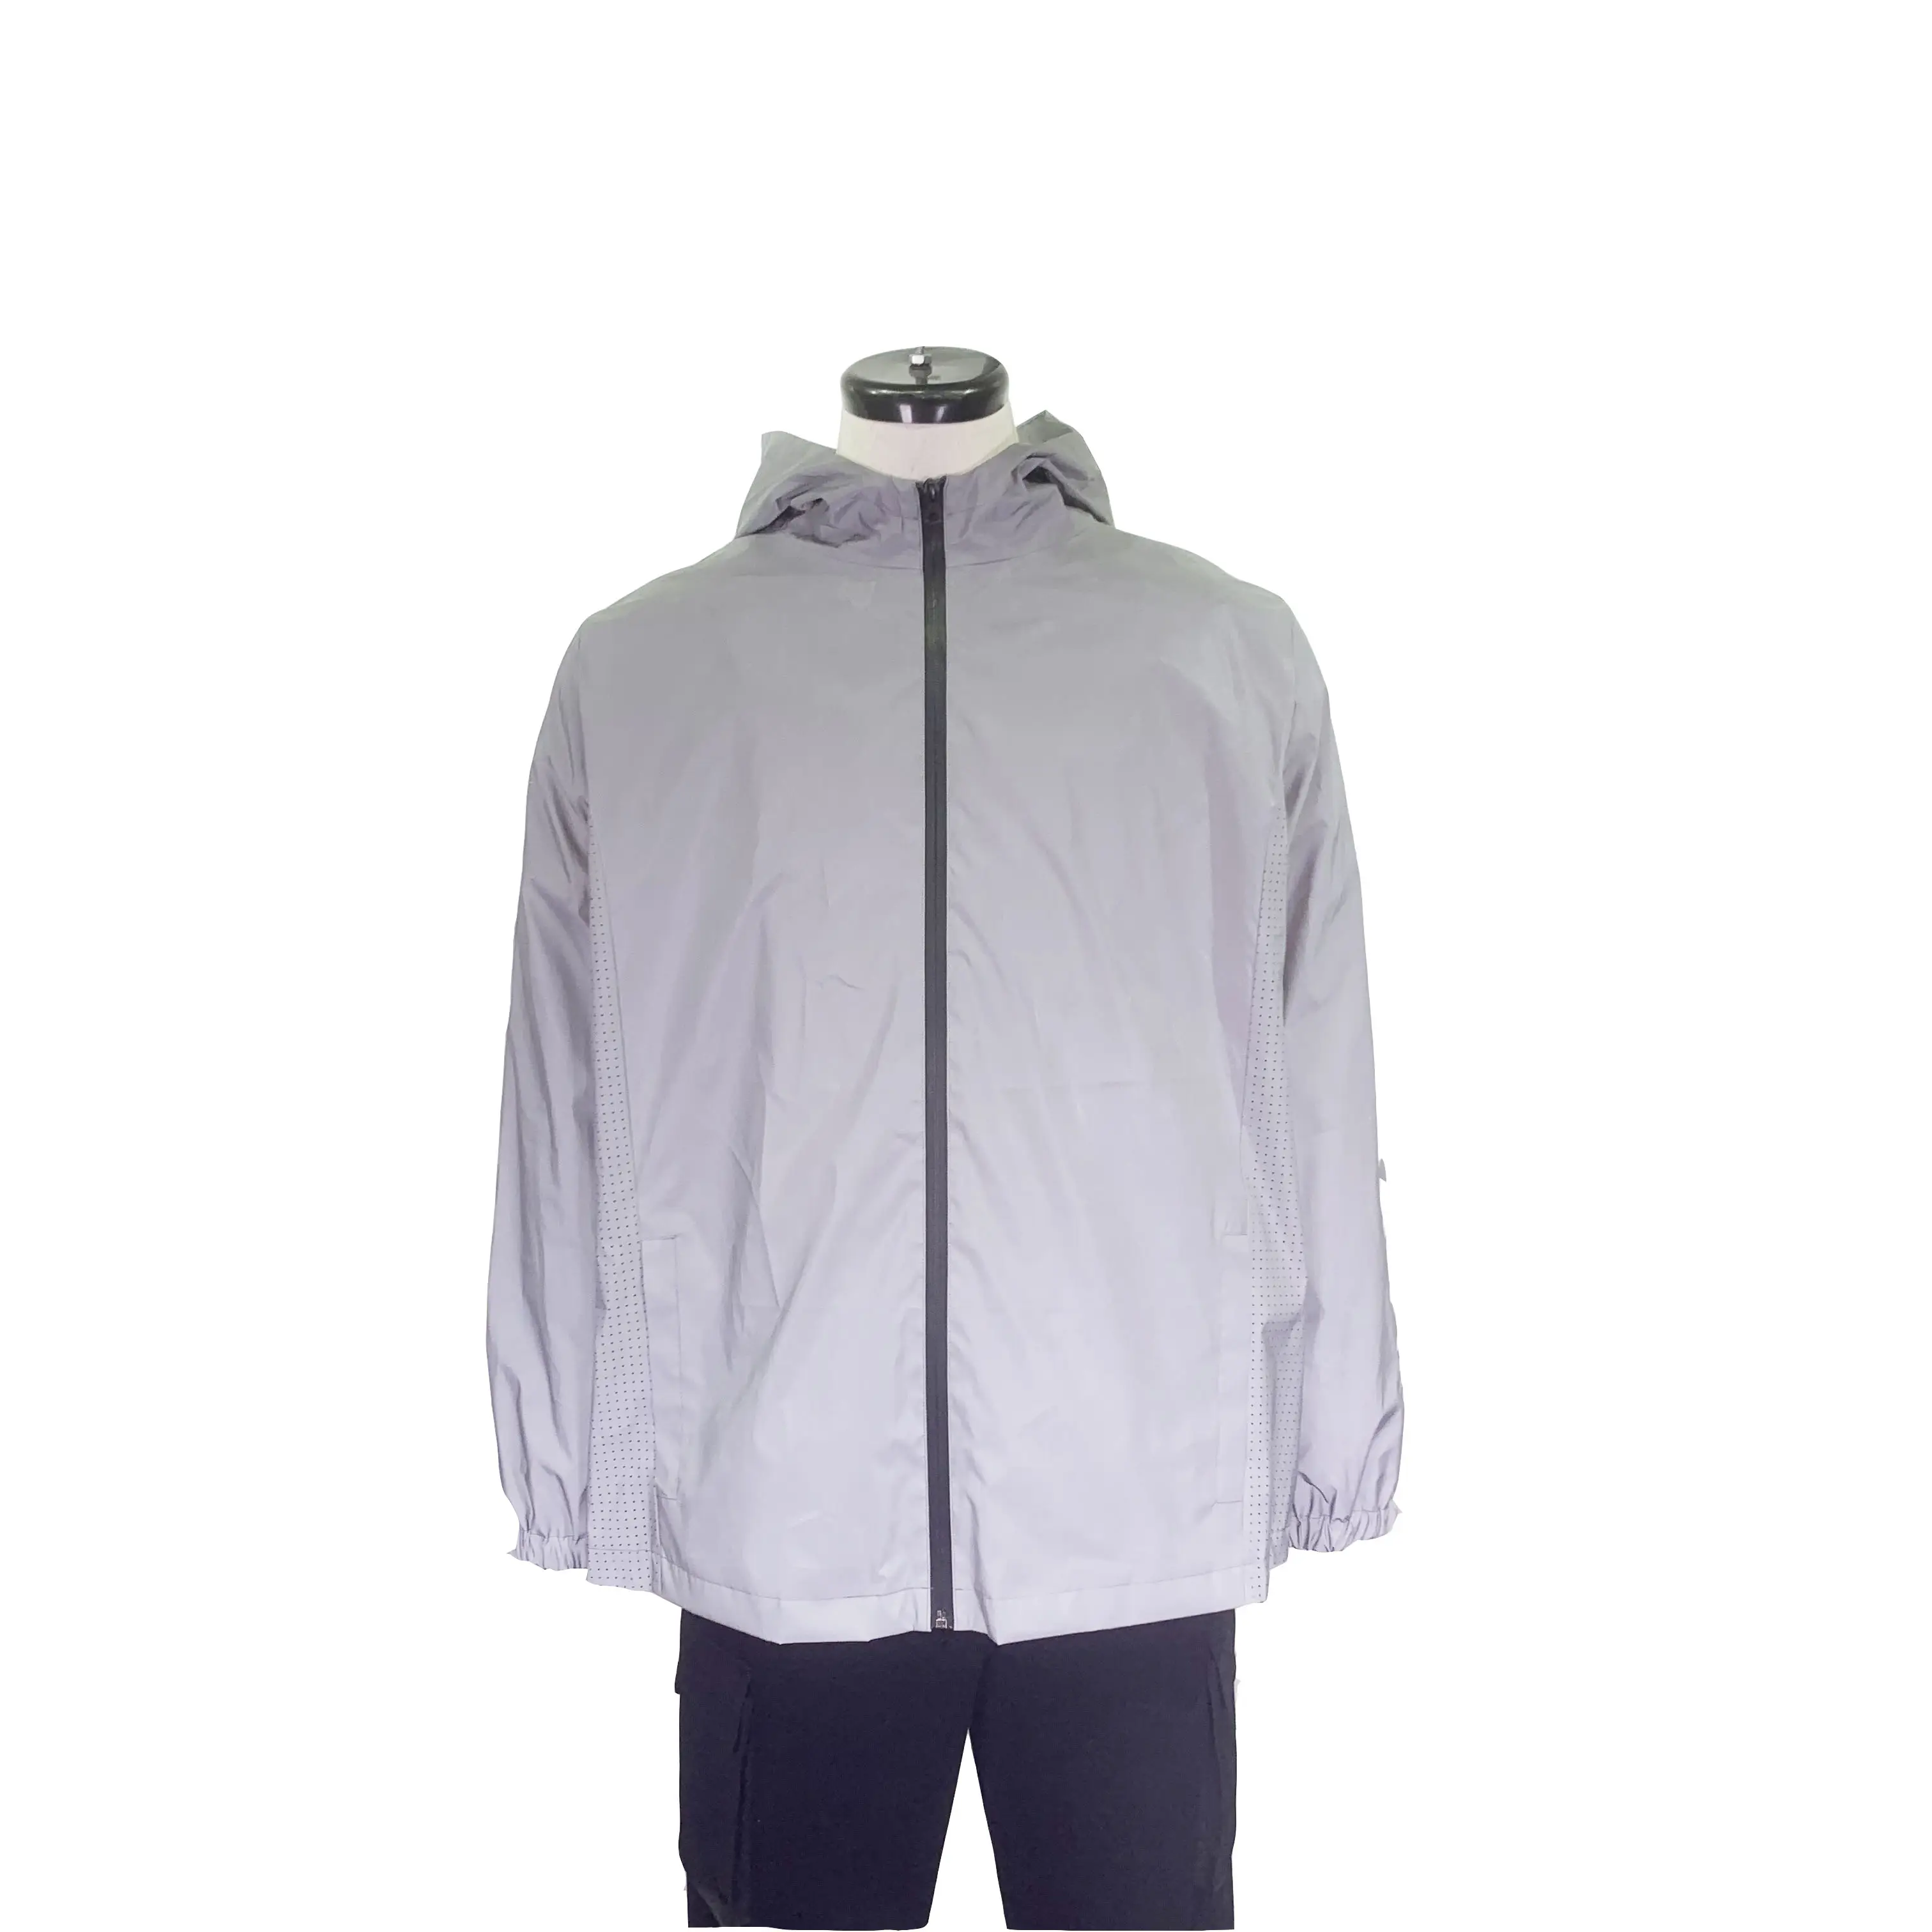 Jaqueta de segurança refletora, fabricante primavera, logotipo personalizado, com capuz, todos os refletivos, manga comprida, casaco de alto brilho, reflexivo